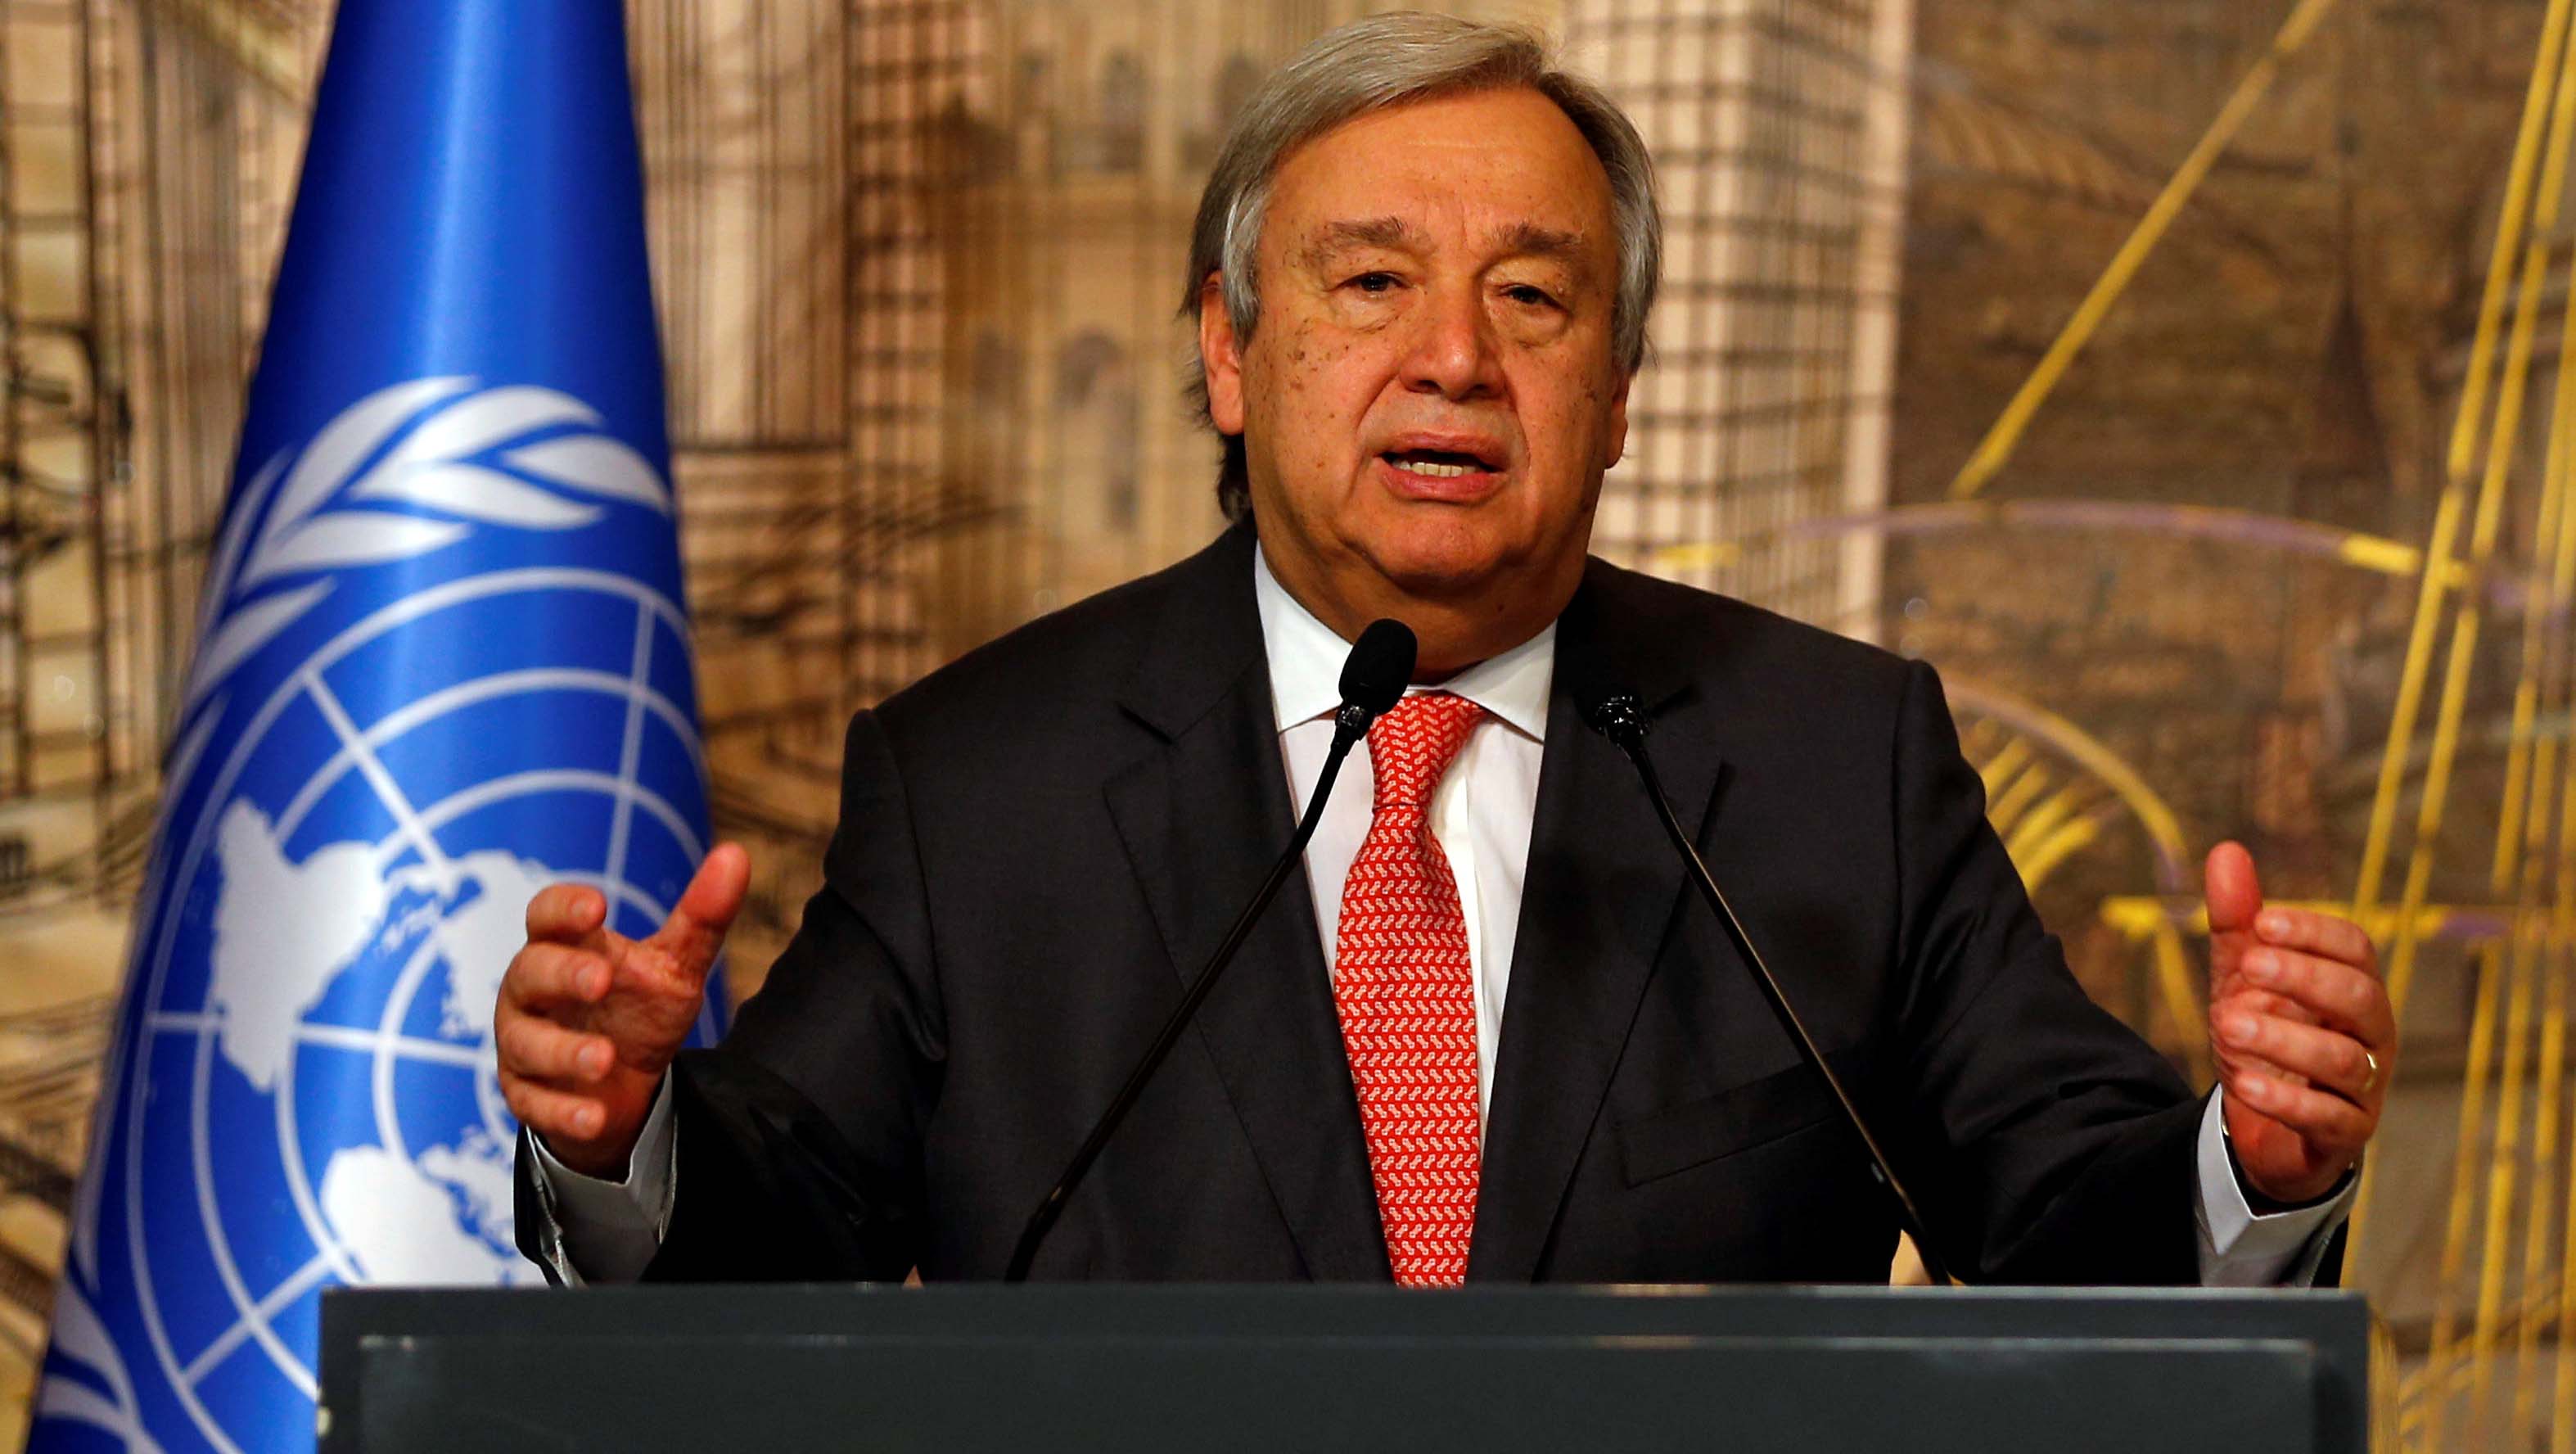 El líder de la ONU se mostró convencido de la necesidad de una solución política para la crisis que padece Siria.